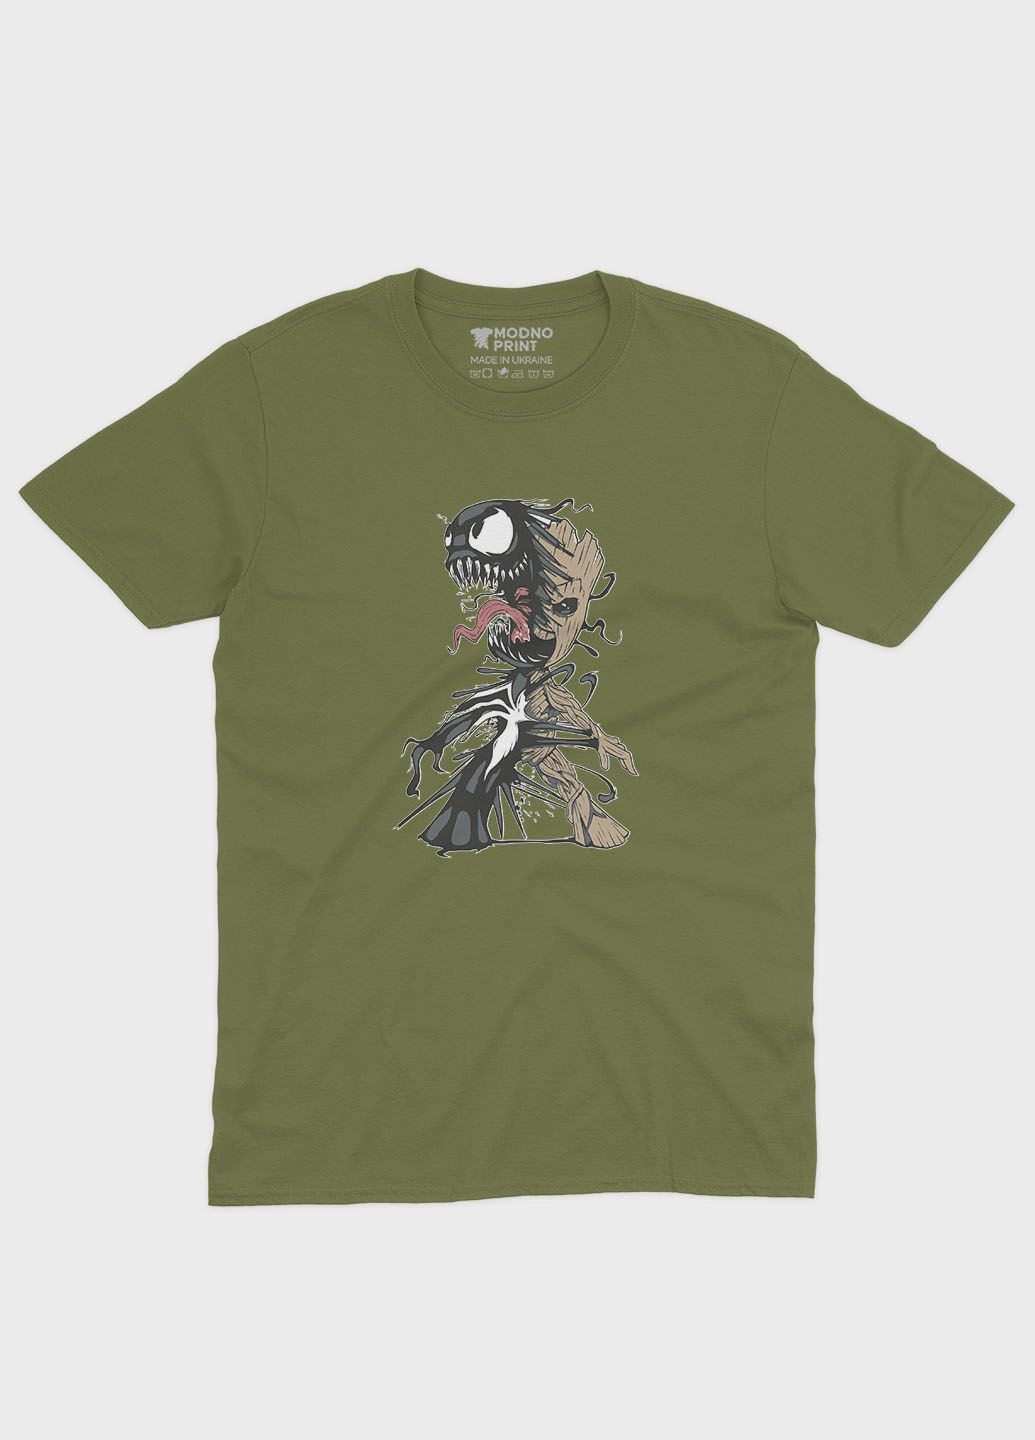 Хаки (оливковая) мужская футболка с принтом супервора - веном (ts001-1-hgr-006-013-024) Modno